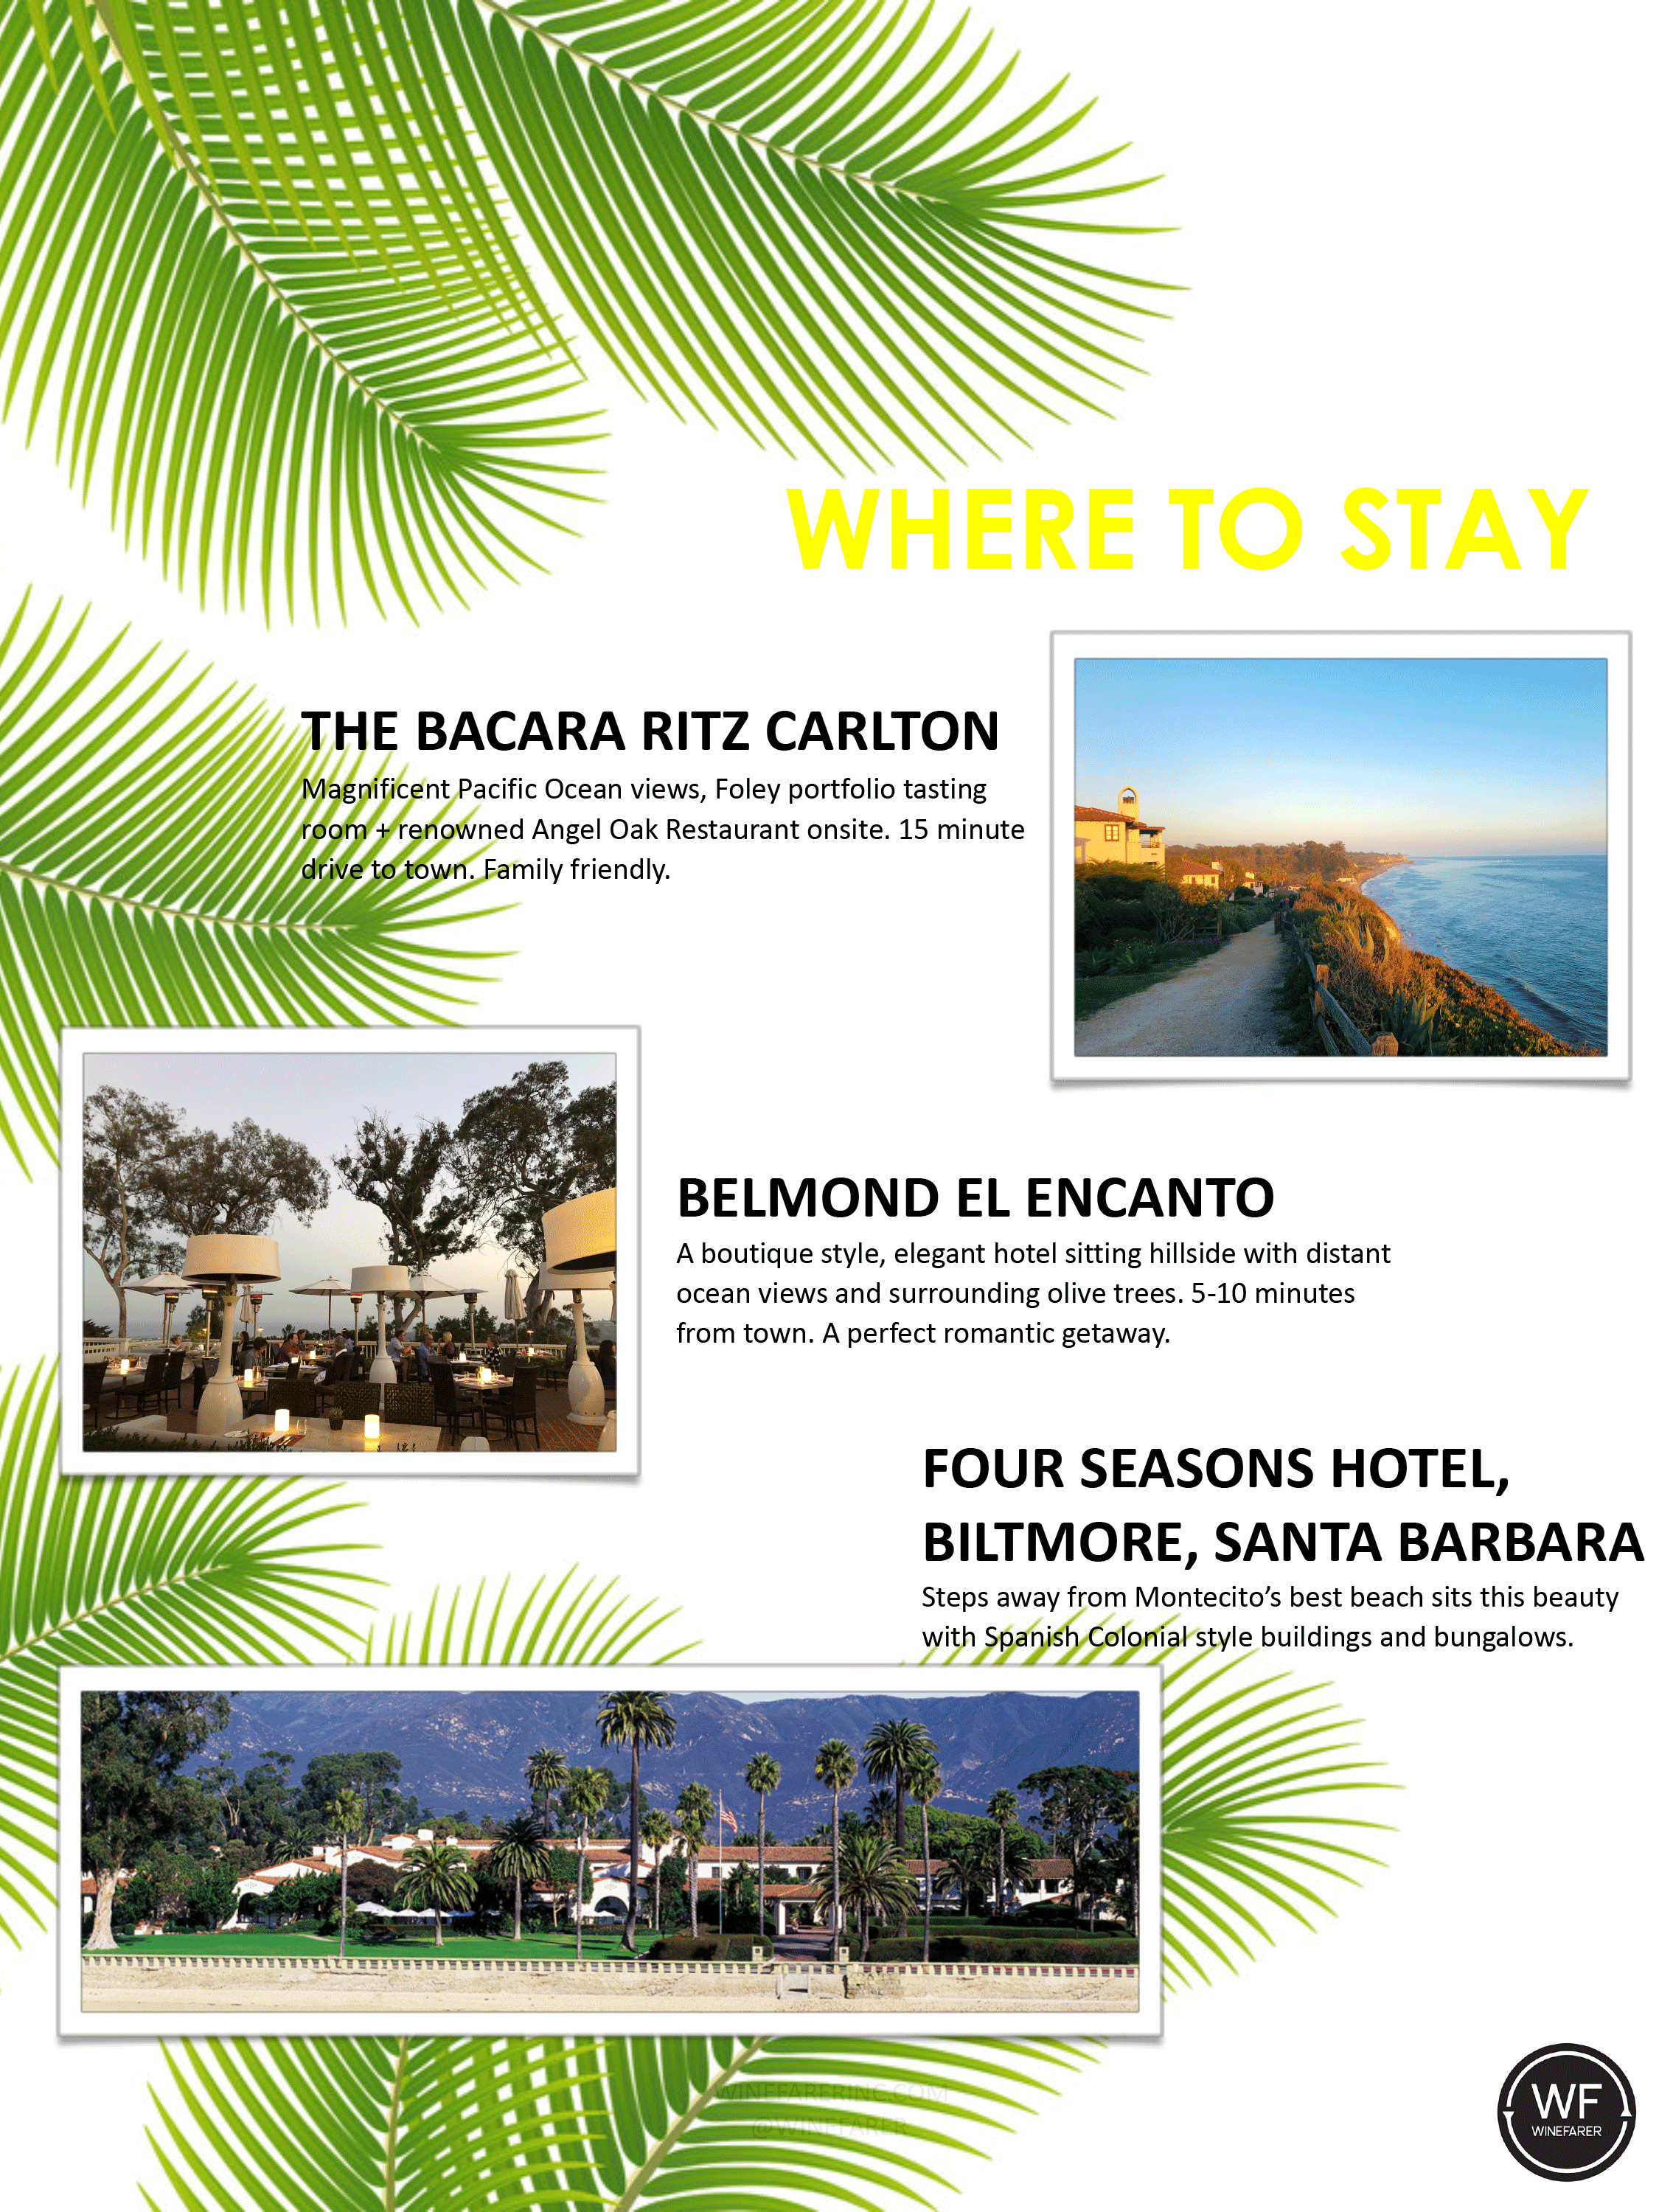 Where to stay in Santa Barbara